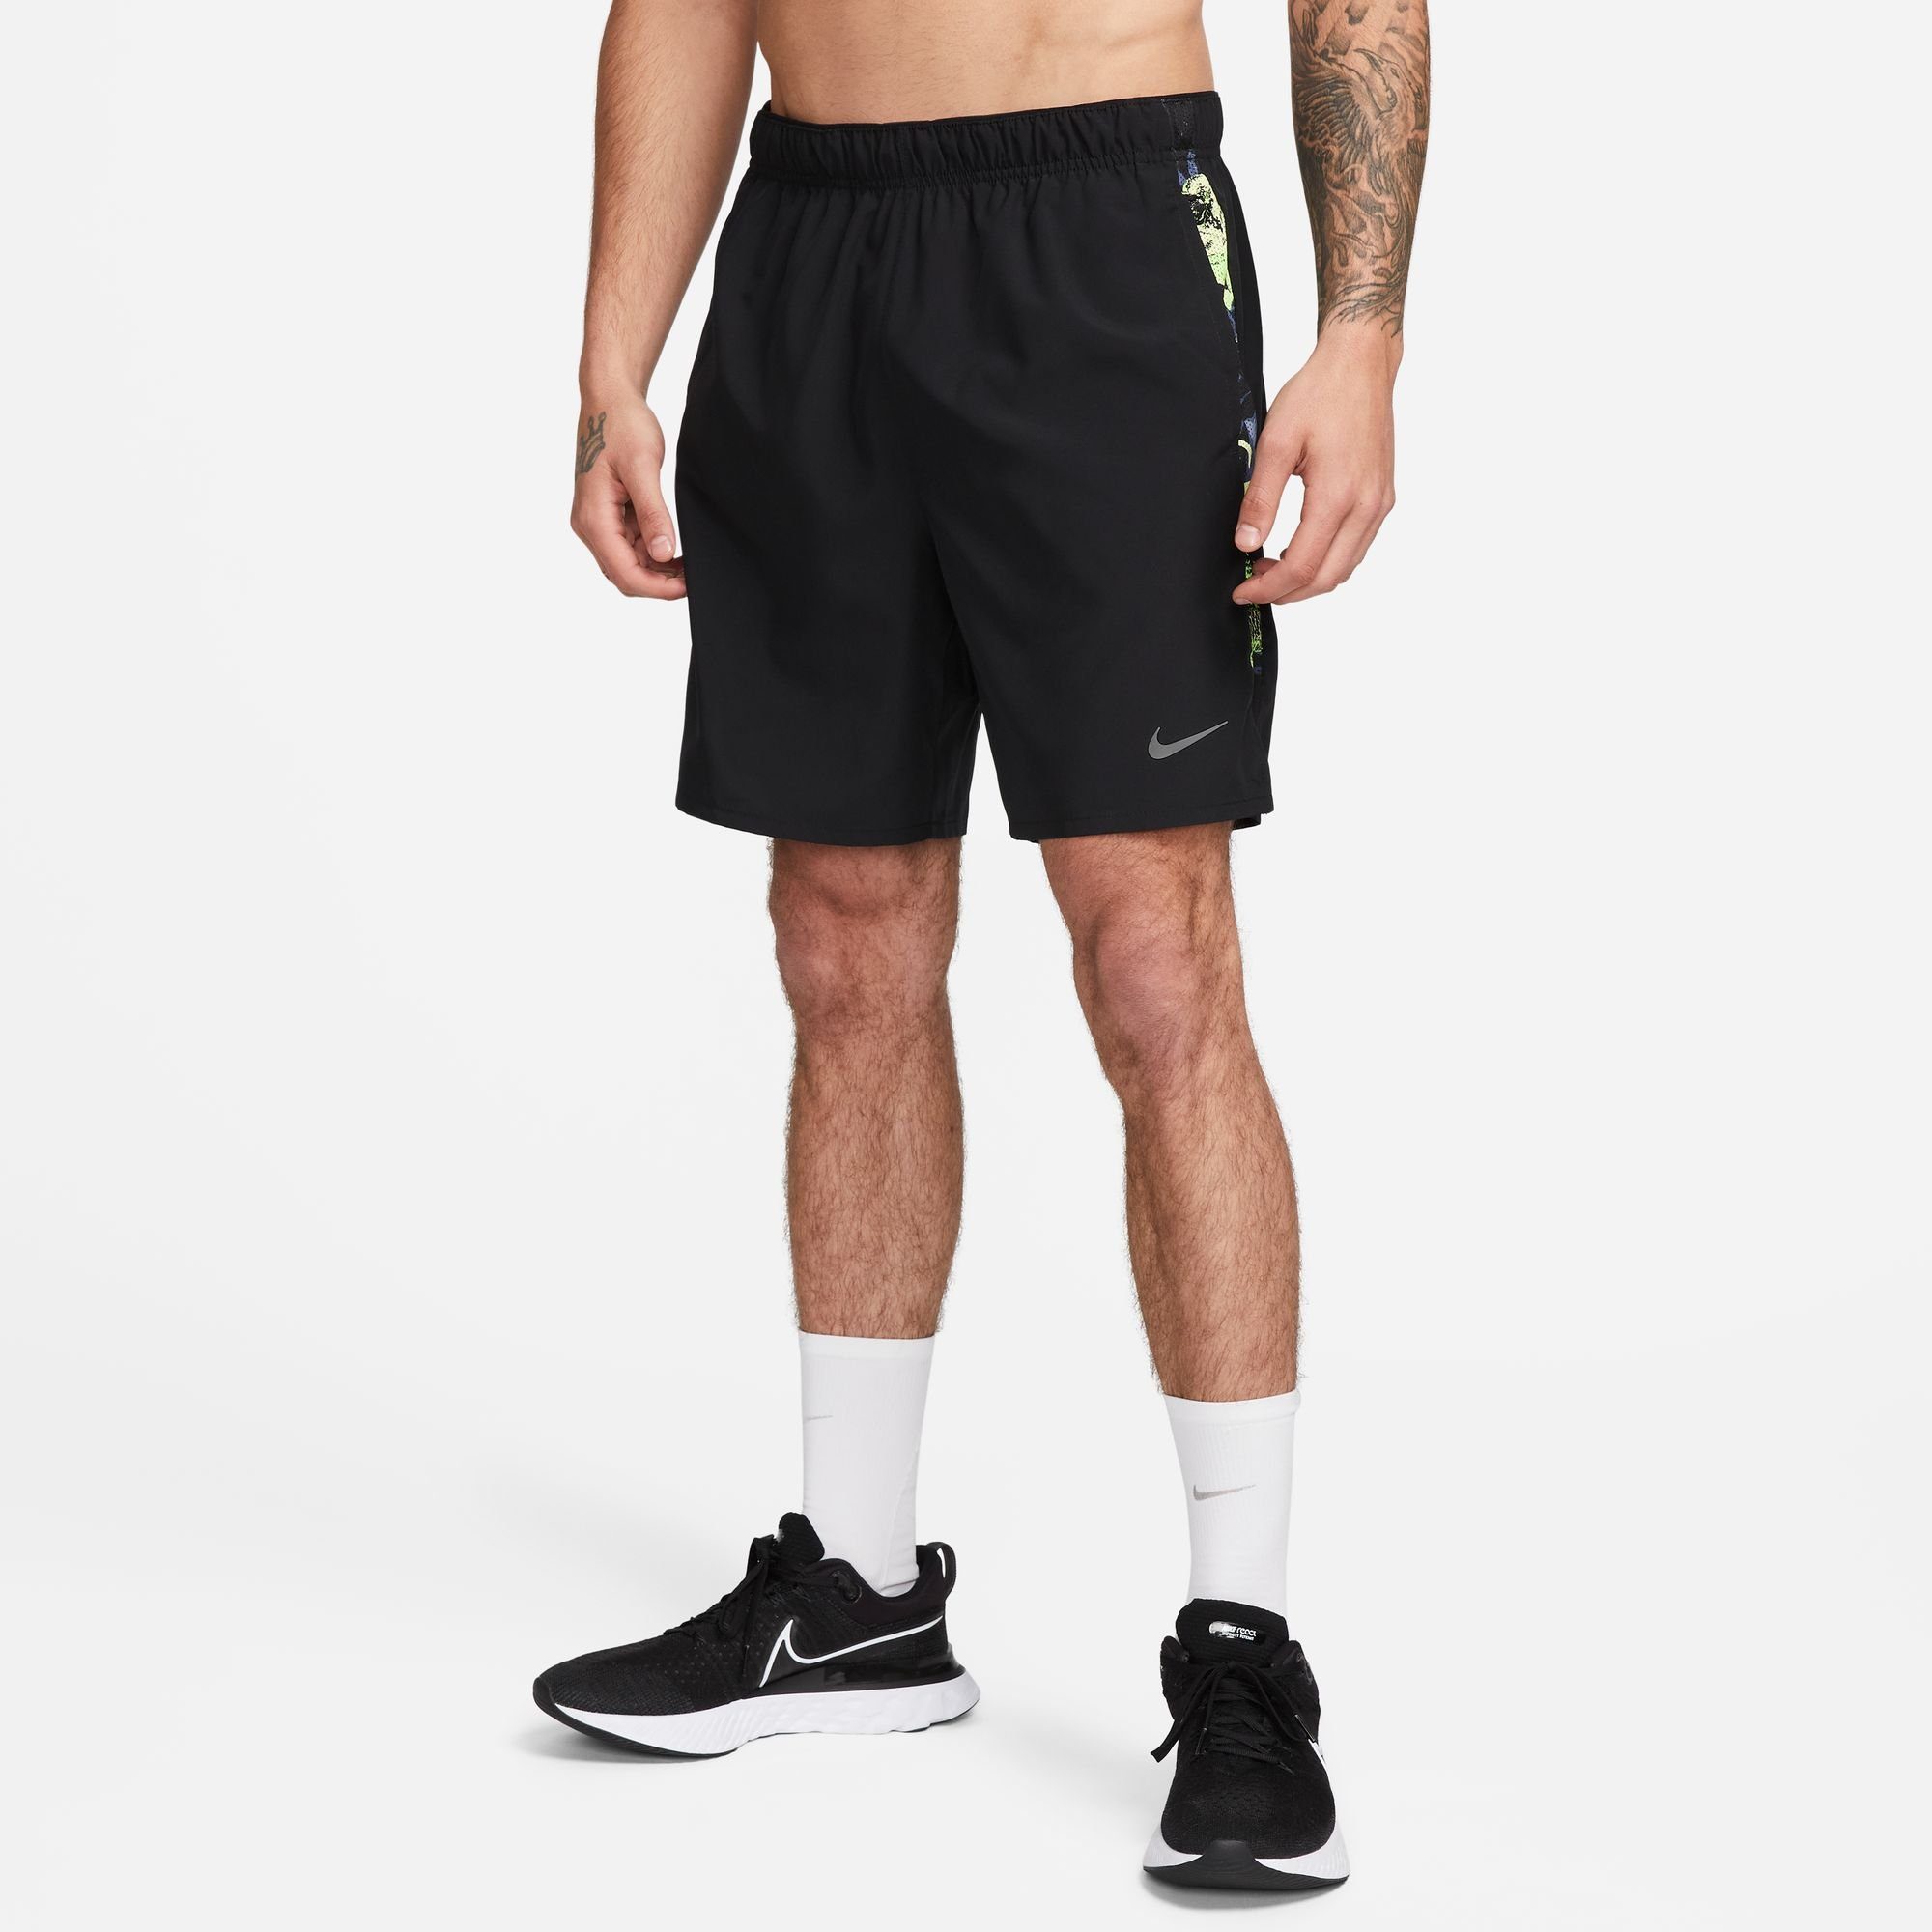 NU 20% KORTING: Nike Runningshort DRI-FIT CHALLENGER STUDIO ' MEN'S UNLINED RUNNING SHORTS